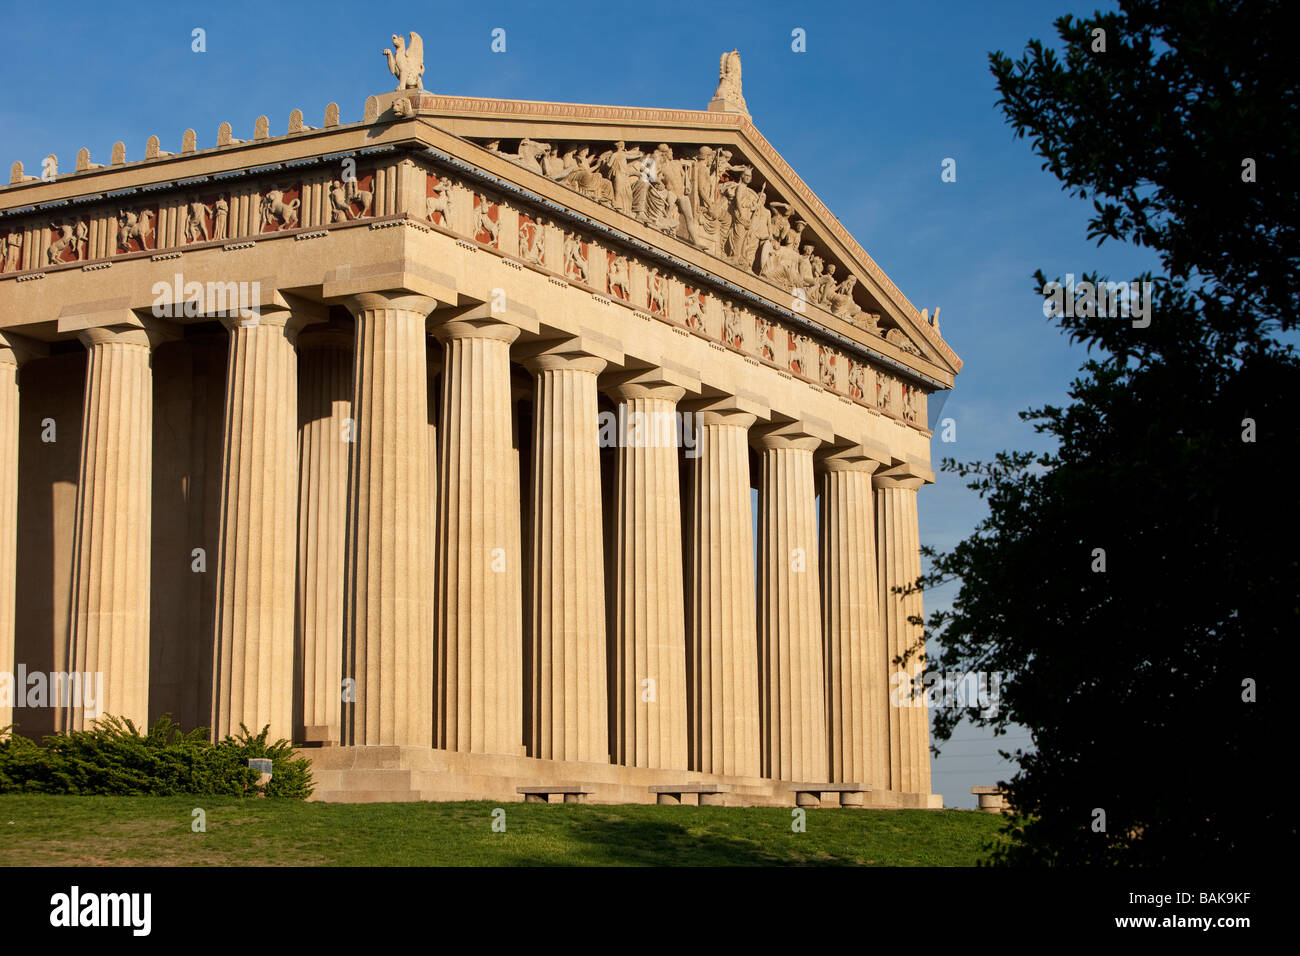 La replica del Partenone al Centennial Park, Nashville, Tennessee, USA Foto Stock